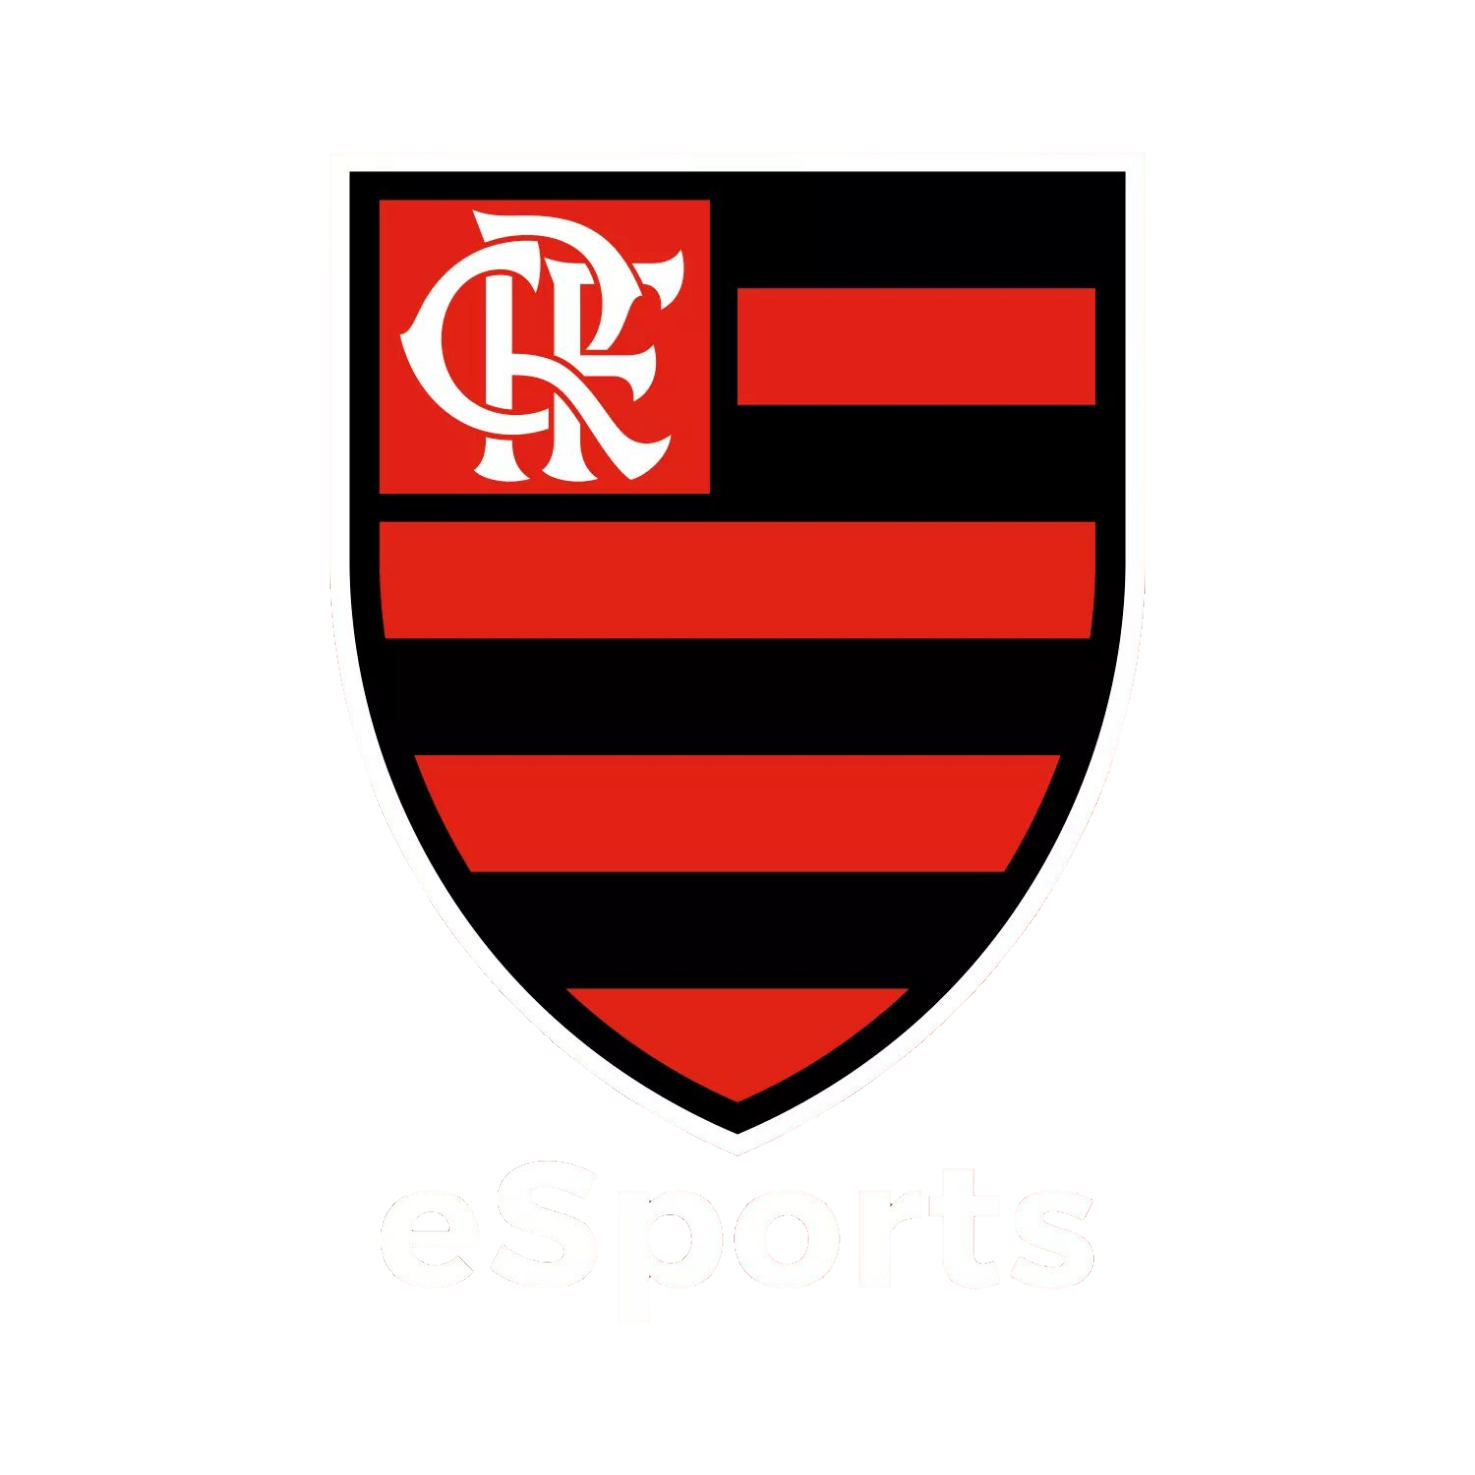 Team Flamengo Esports logo